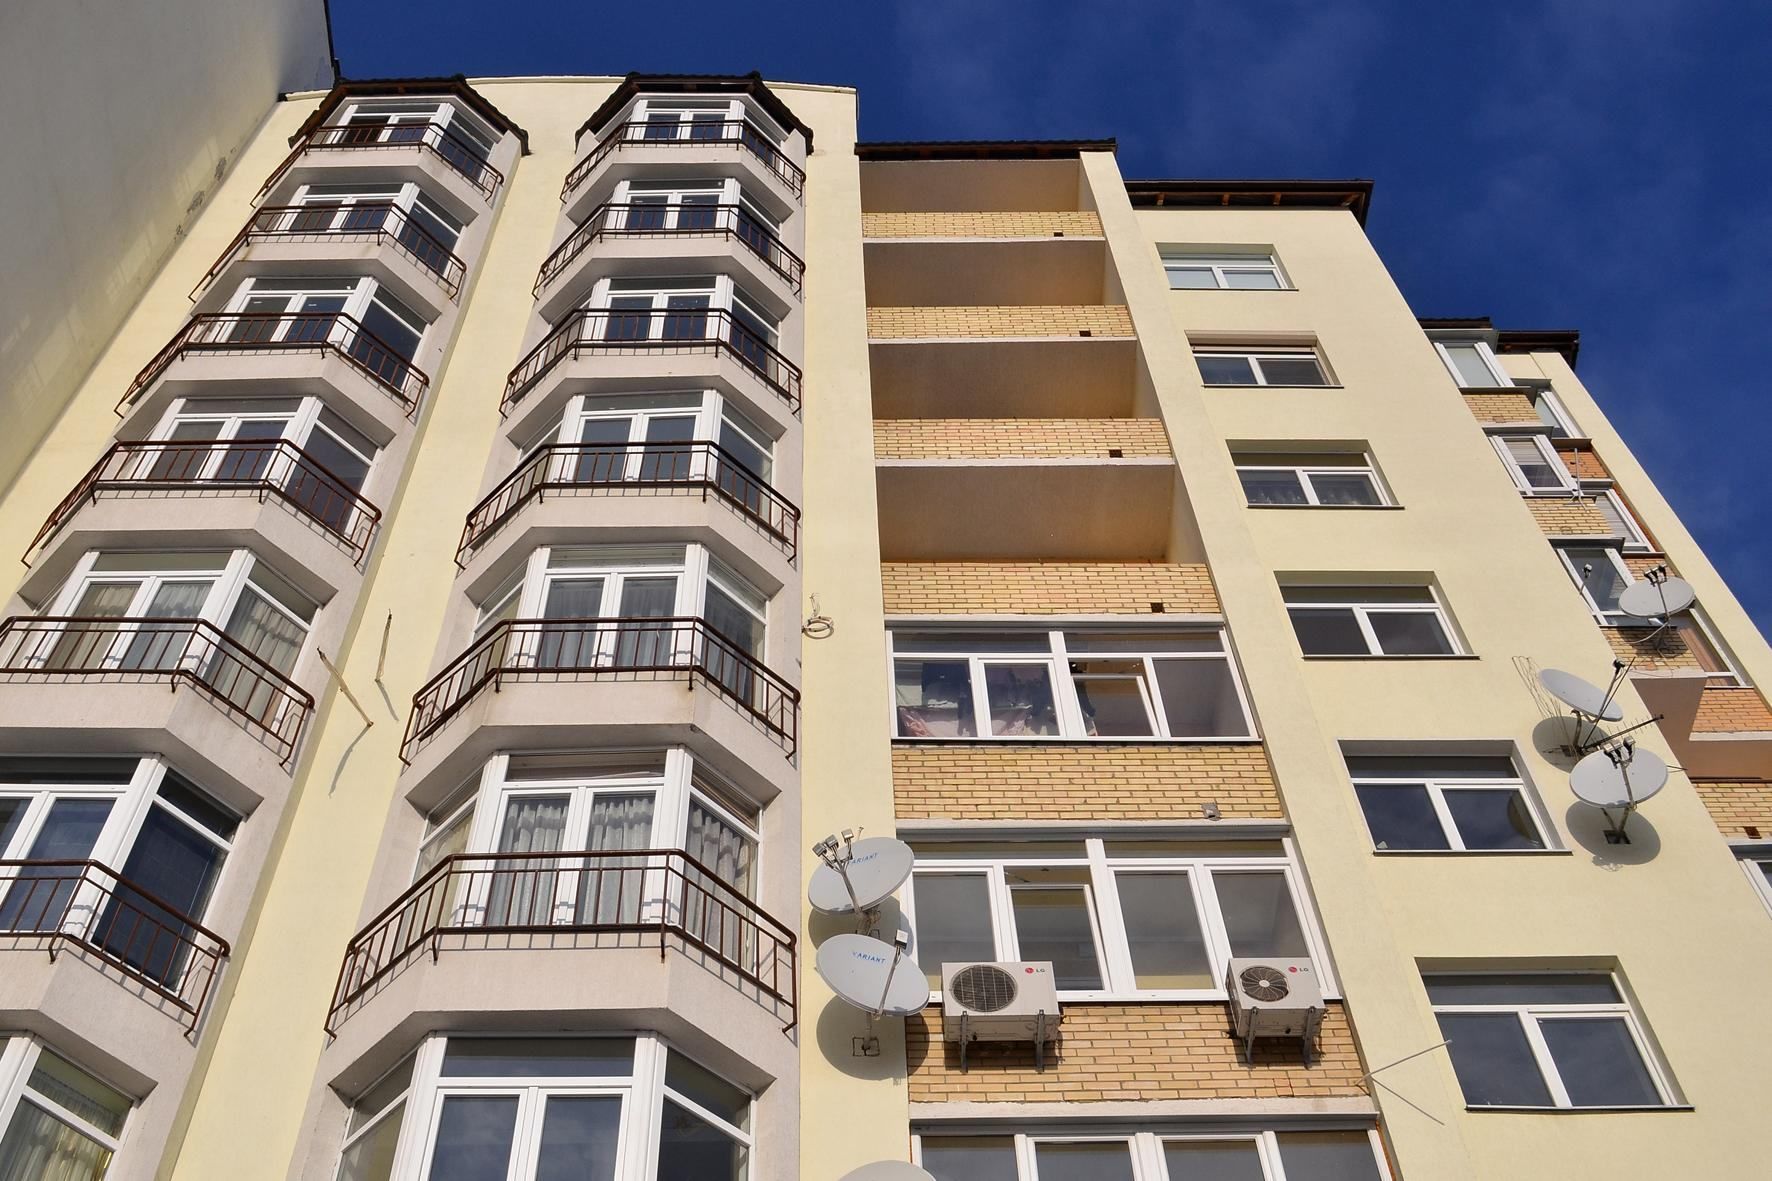 Кондиционеры на фасадах и достроенные балконы запретили в Броварах